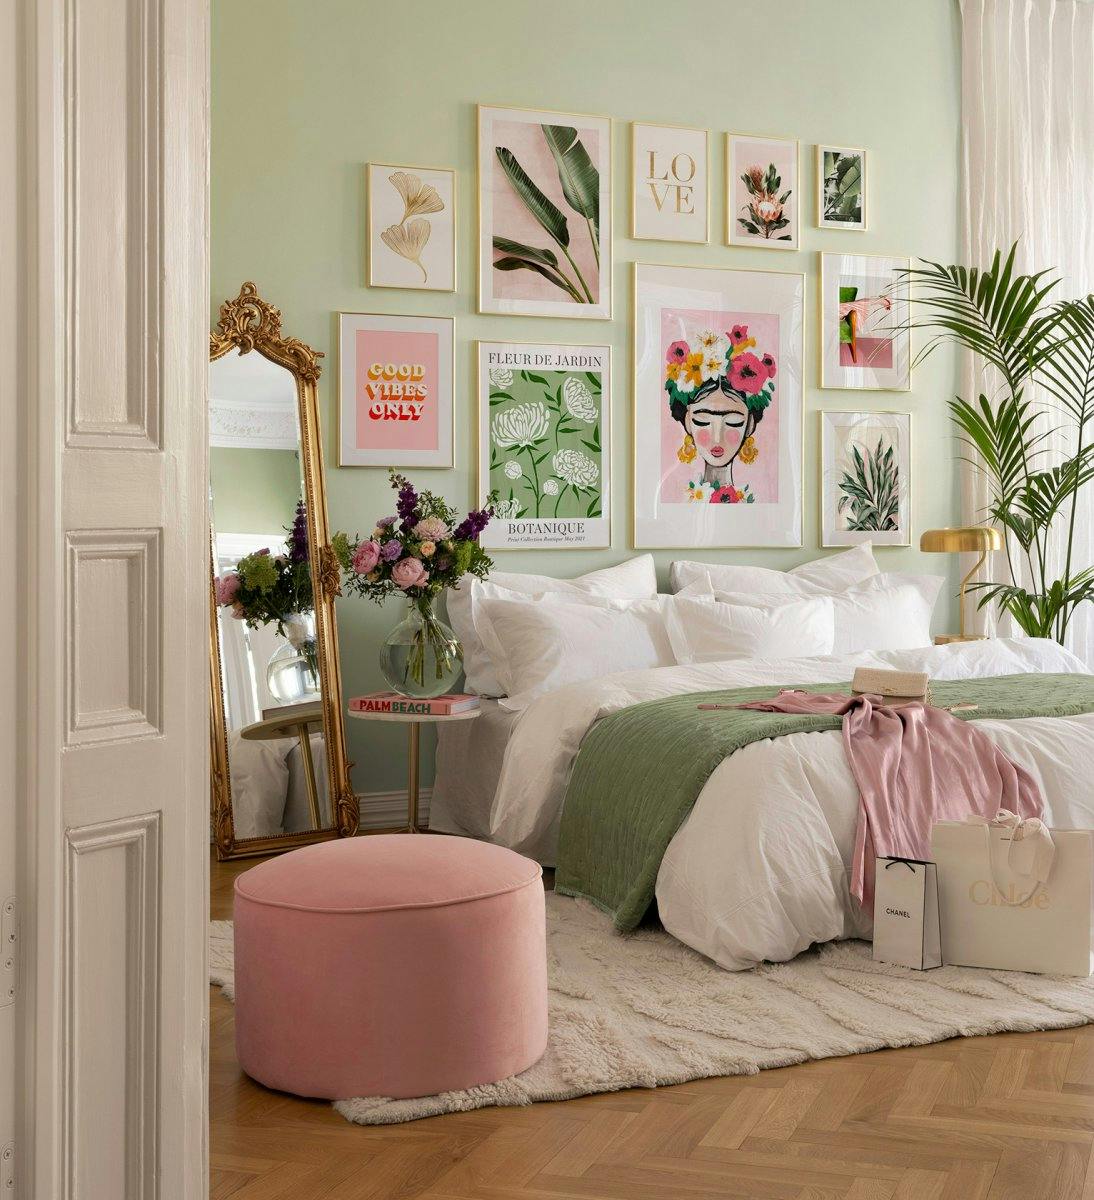 Décoration murale rose et verte avec des posters girly et botaniques avec des cadres dorés pour la chambre